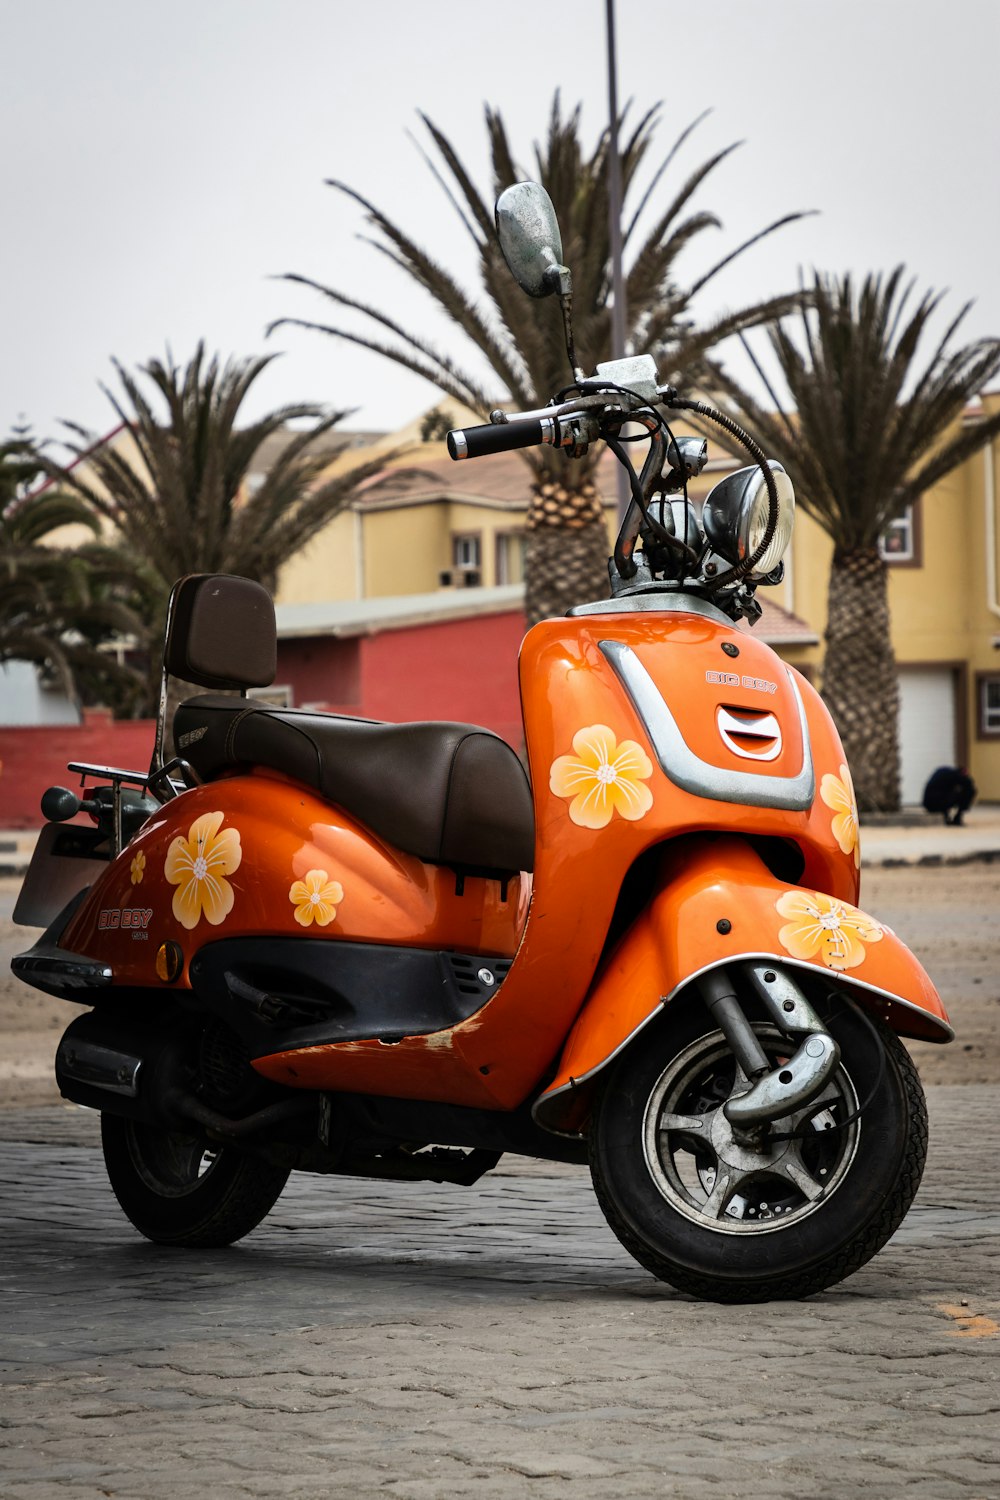 orange and black motor scooter photo – Free Motorcycle Image on Unsplash